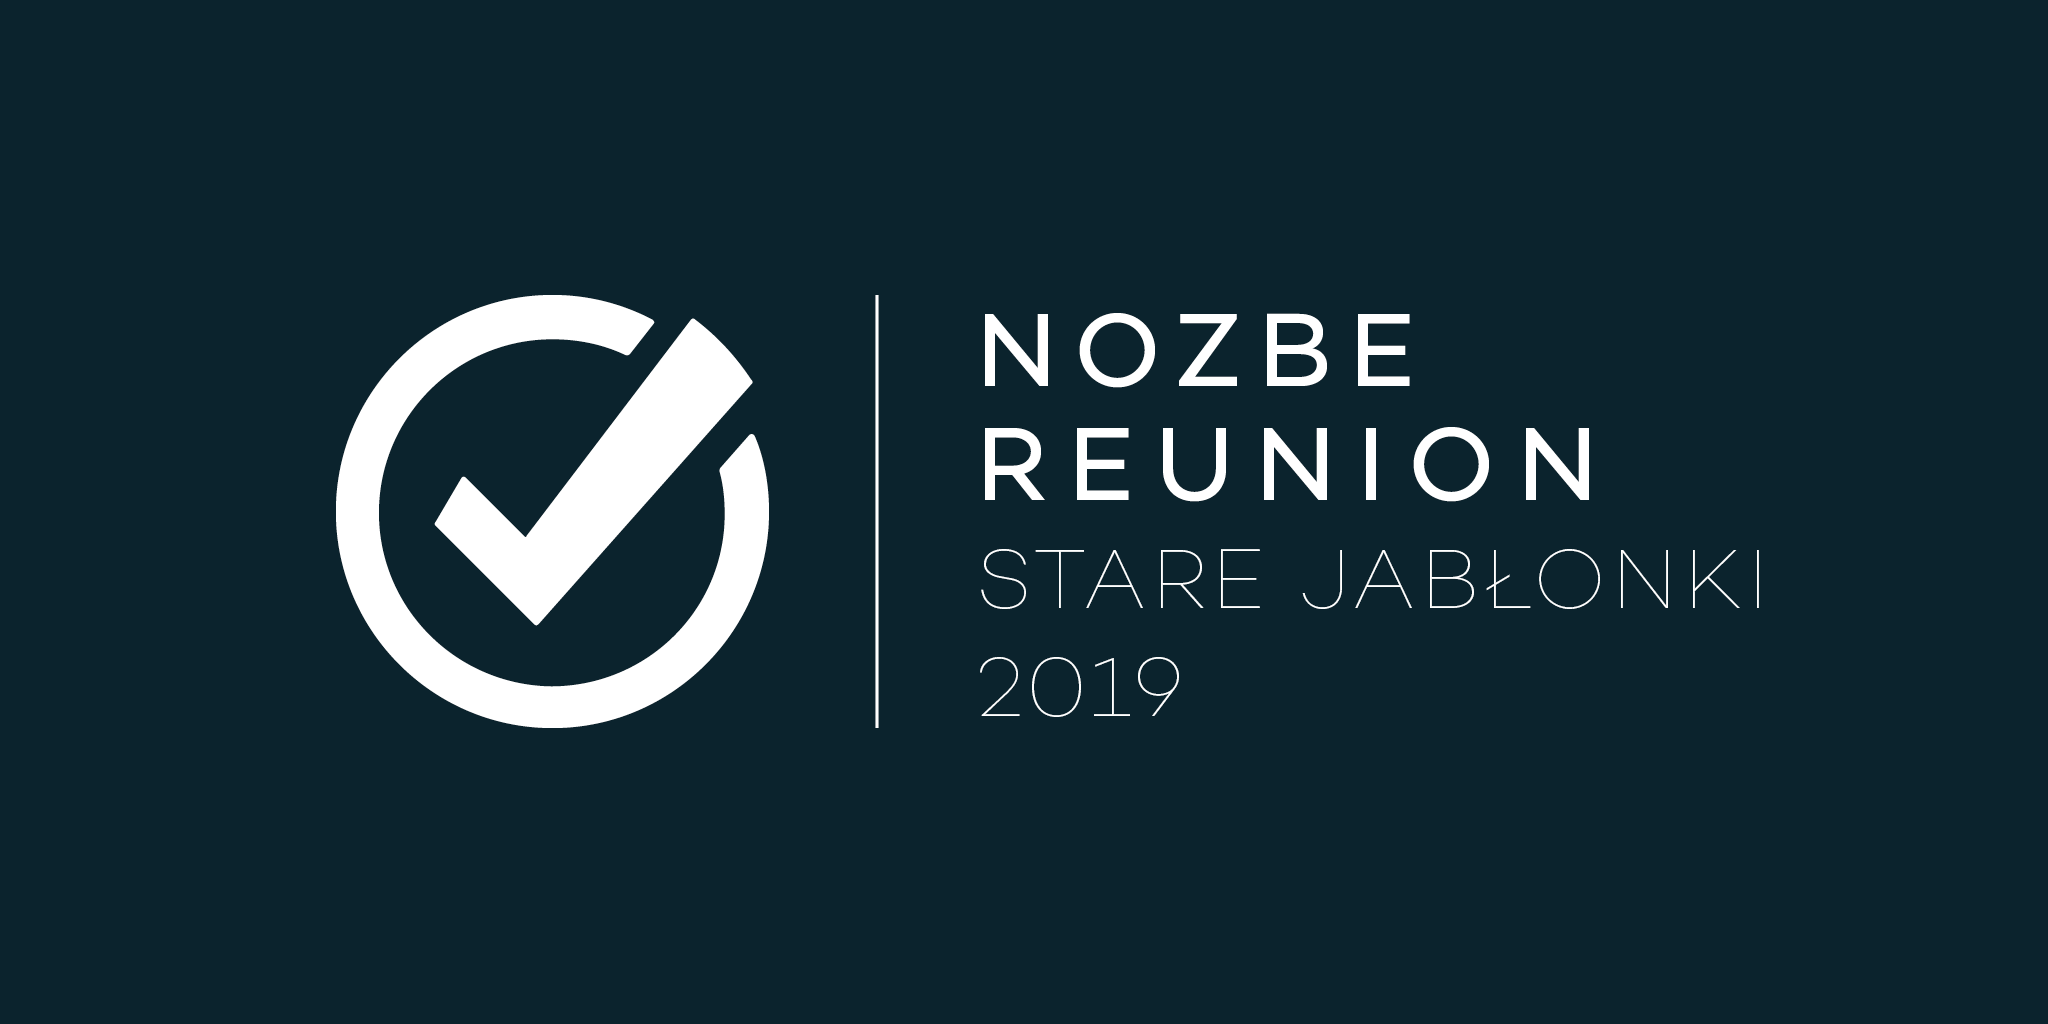 Réunion de l’équipe Nozbe - Mazurie (du 8 au 12 avril 2018) - Ralentissement du service à la clientèle